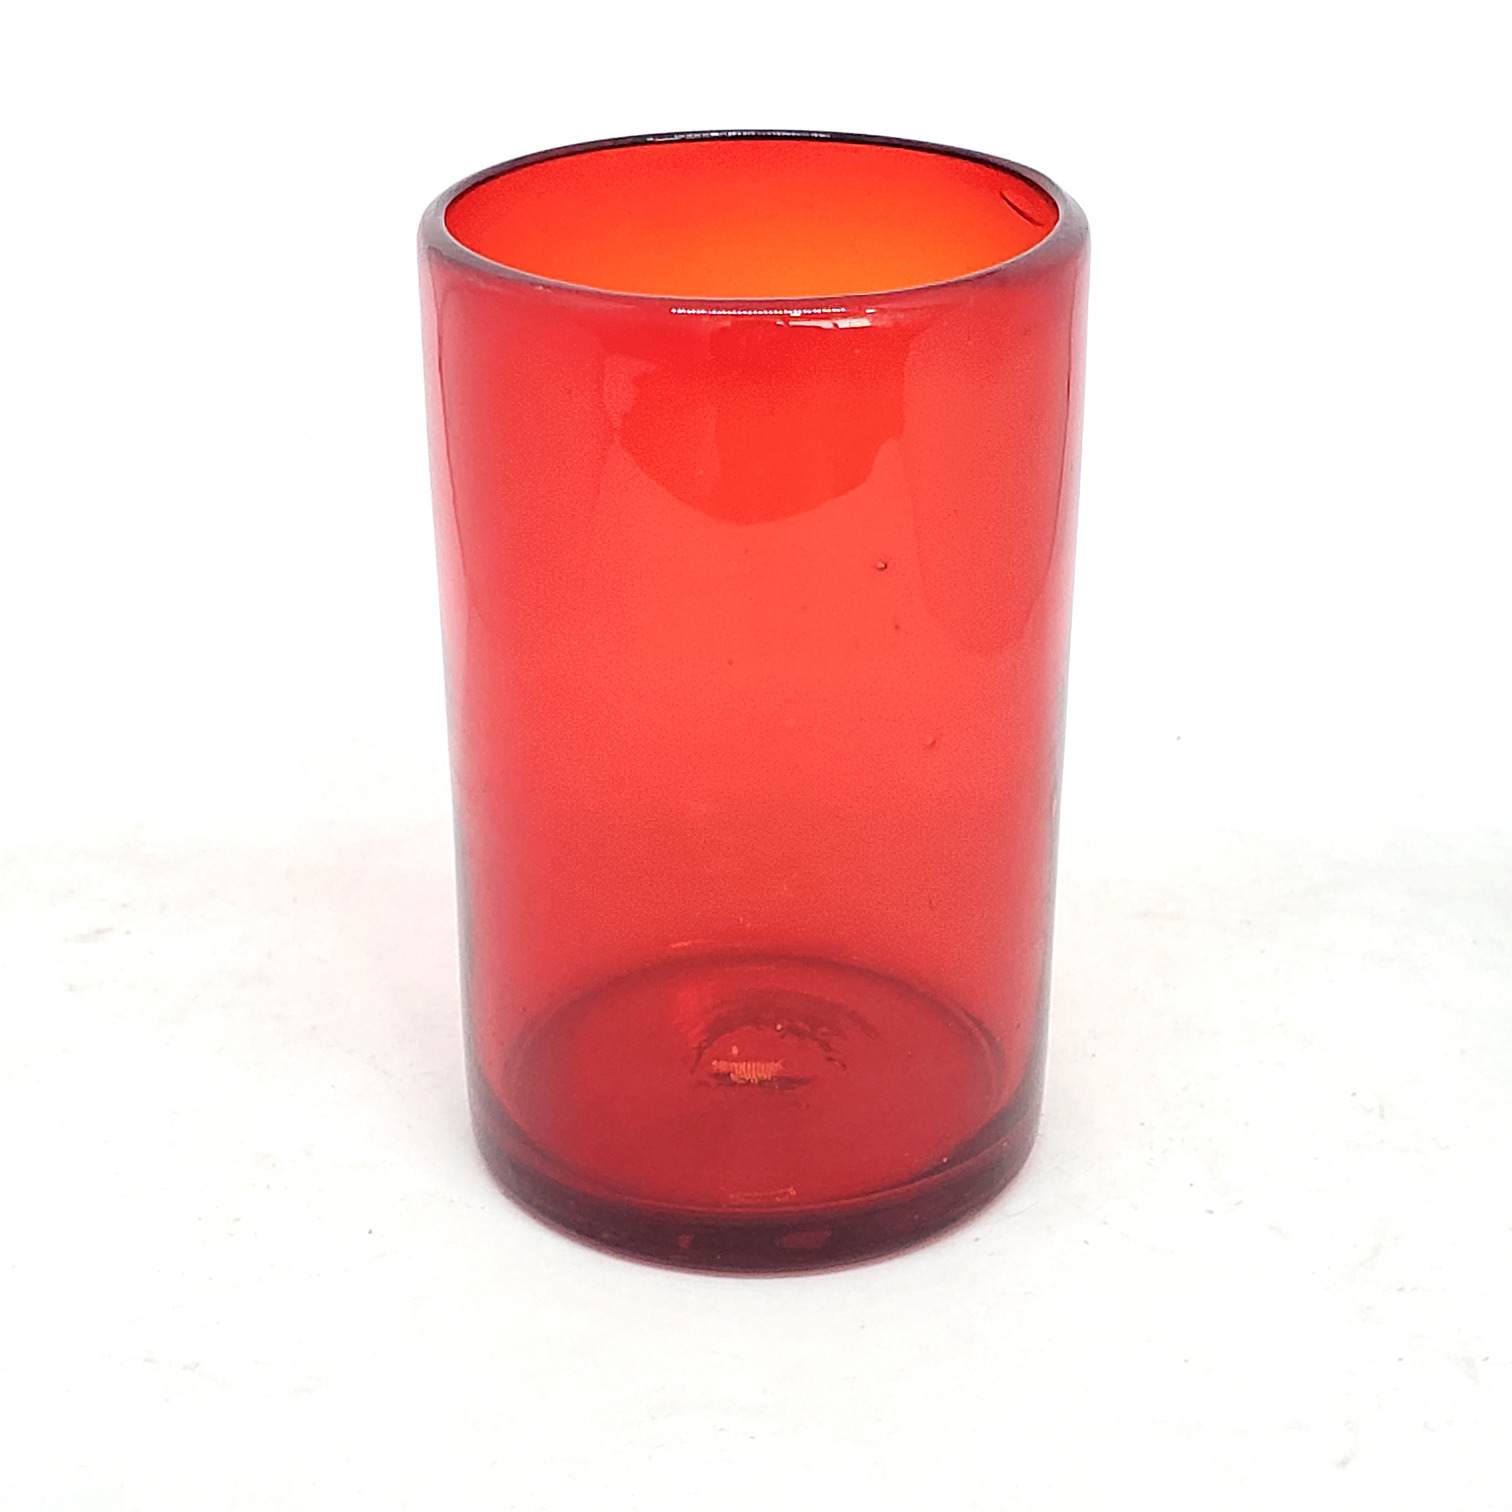 Ofertas / vasos grandes color rojo rub� / �stos artesanales vasos le dar�n un toque cl�sico a su bebida favorita.